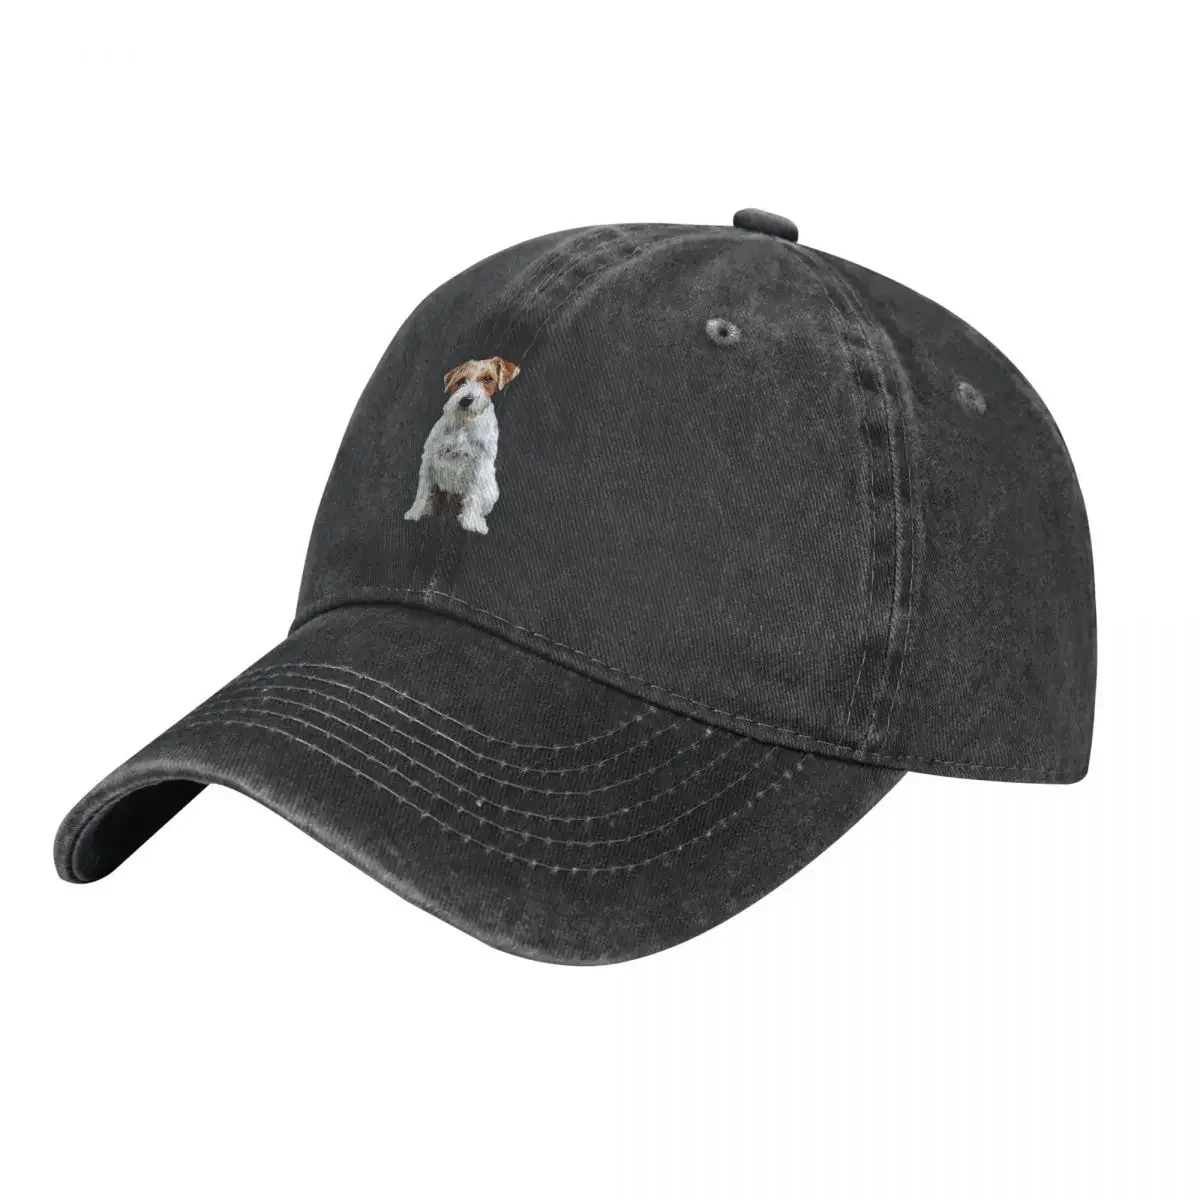 

Джек Рассел терьер искусственная ковбойская шляпа рыболовная Кепка пляжная шляпа женская шапка мужская